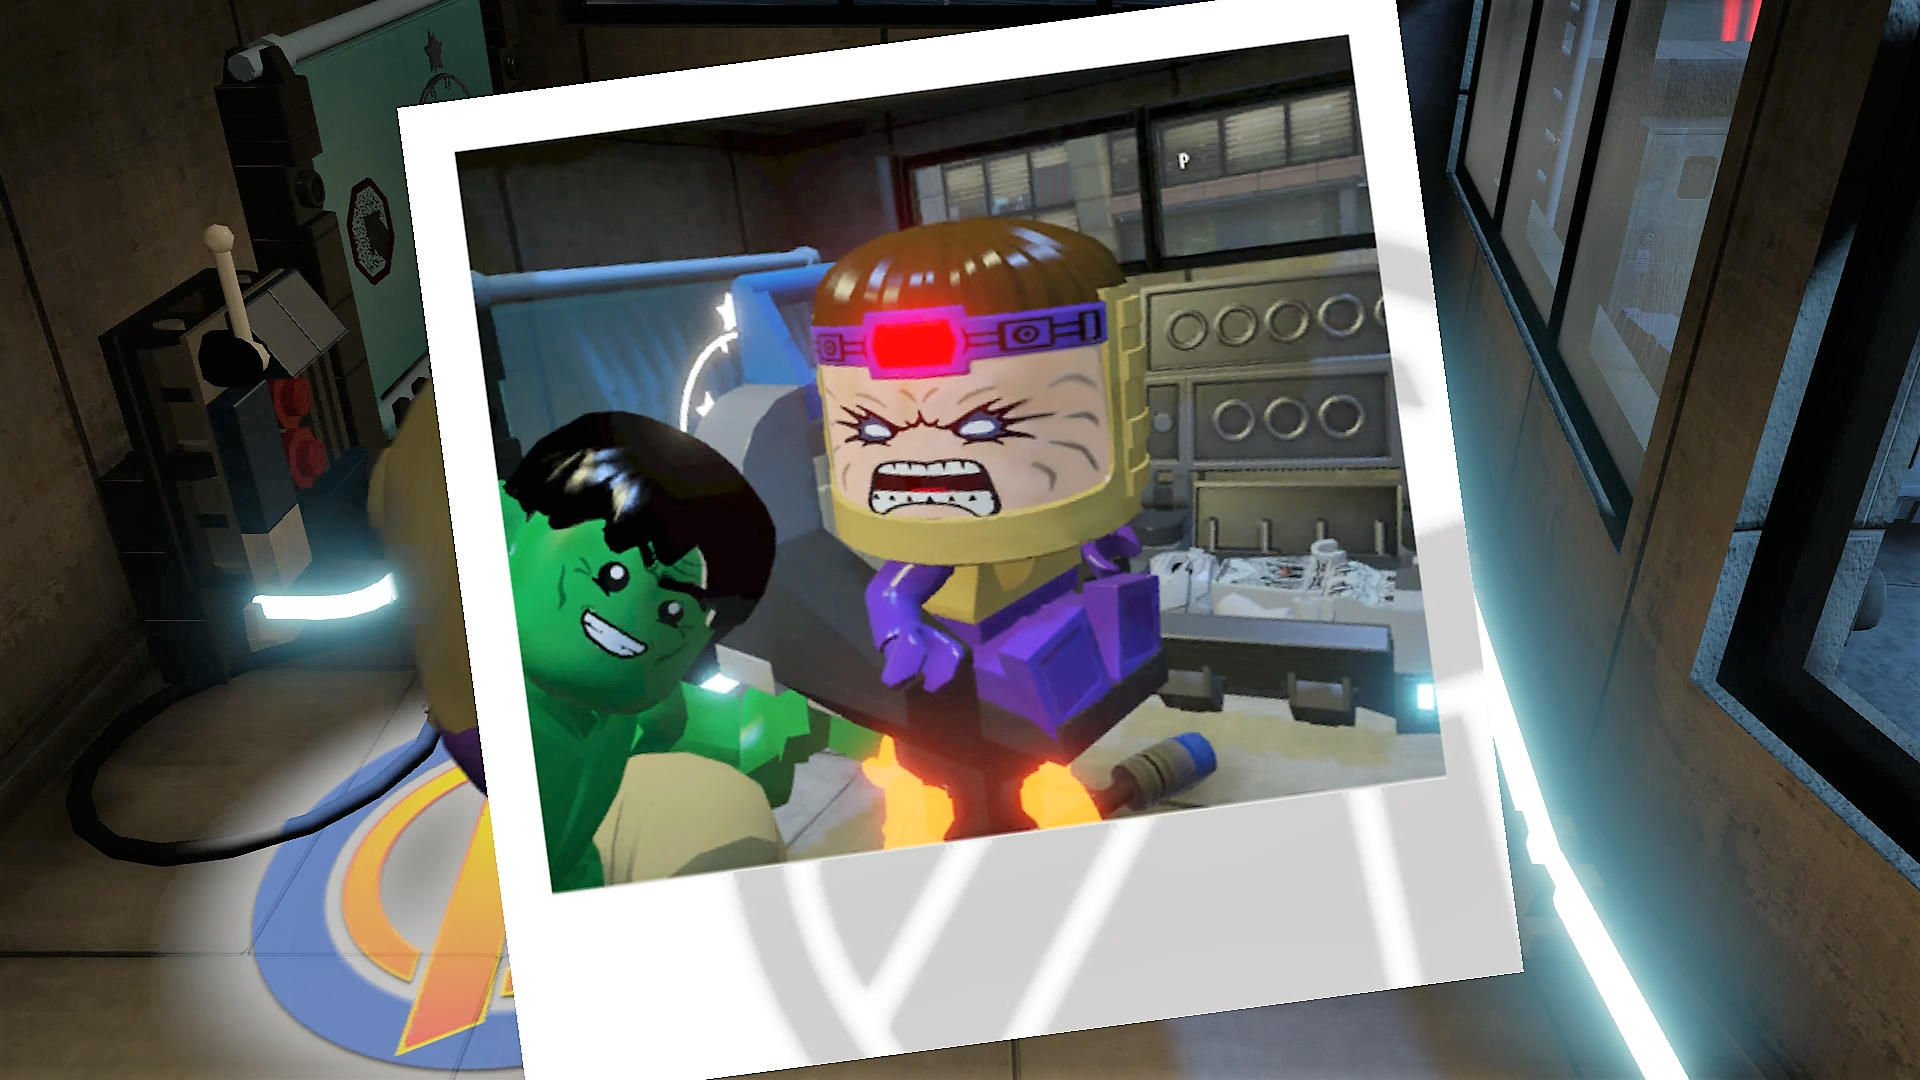 MODOK and Hulk take a selfie - S.H.I.E.L.D. Base